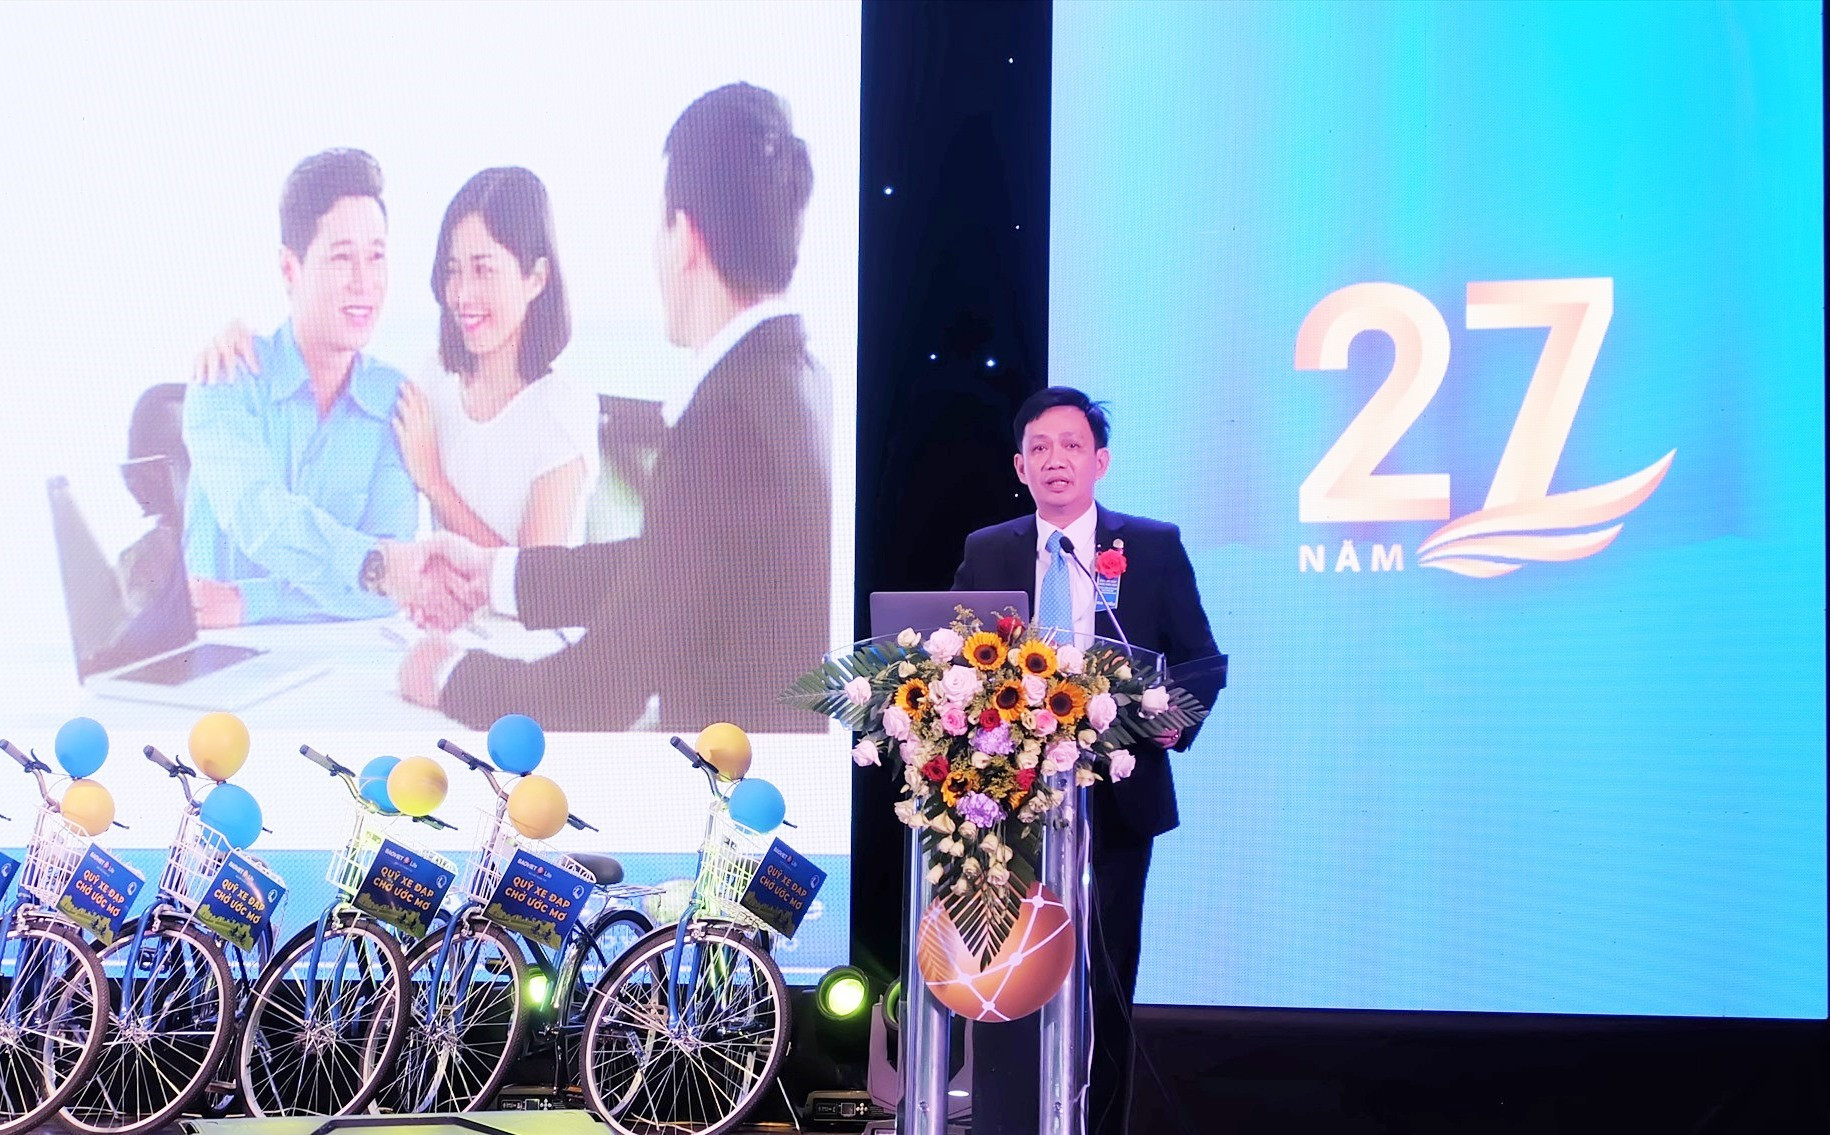 Ông Đỗ Hoàng Anh - Giám đốc Bảo Việt nhân thọ Quảng Nam phát biểu tại chương trình. Ảnh: M.L